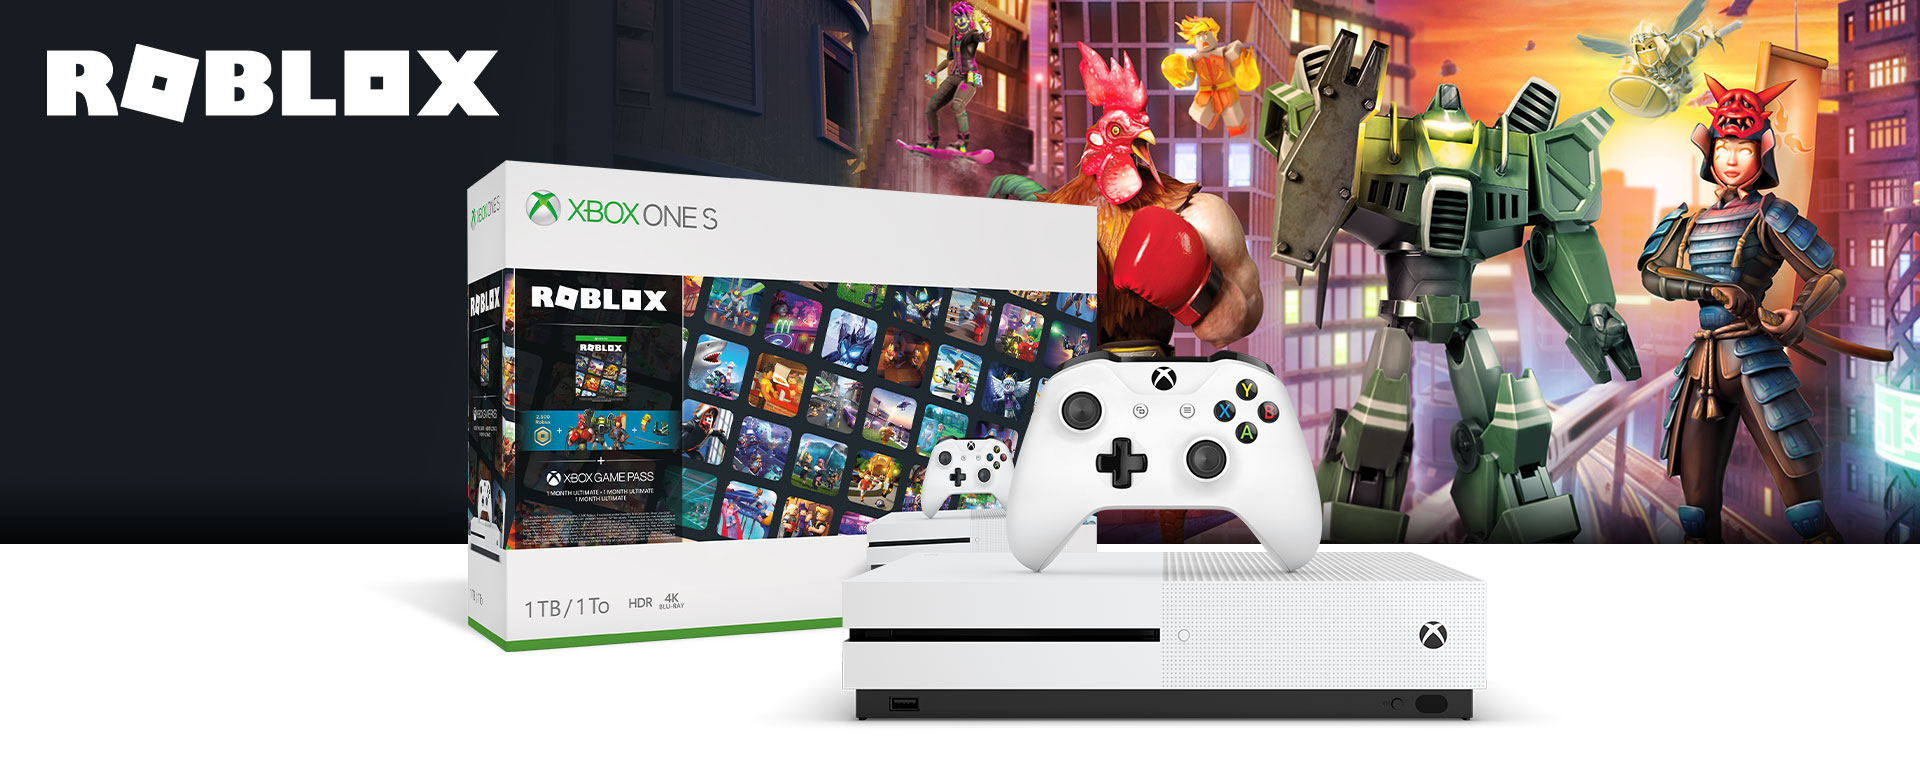 Paquete Xbox One S Roblox 1 Tb Xbox